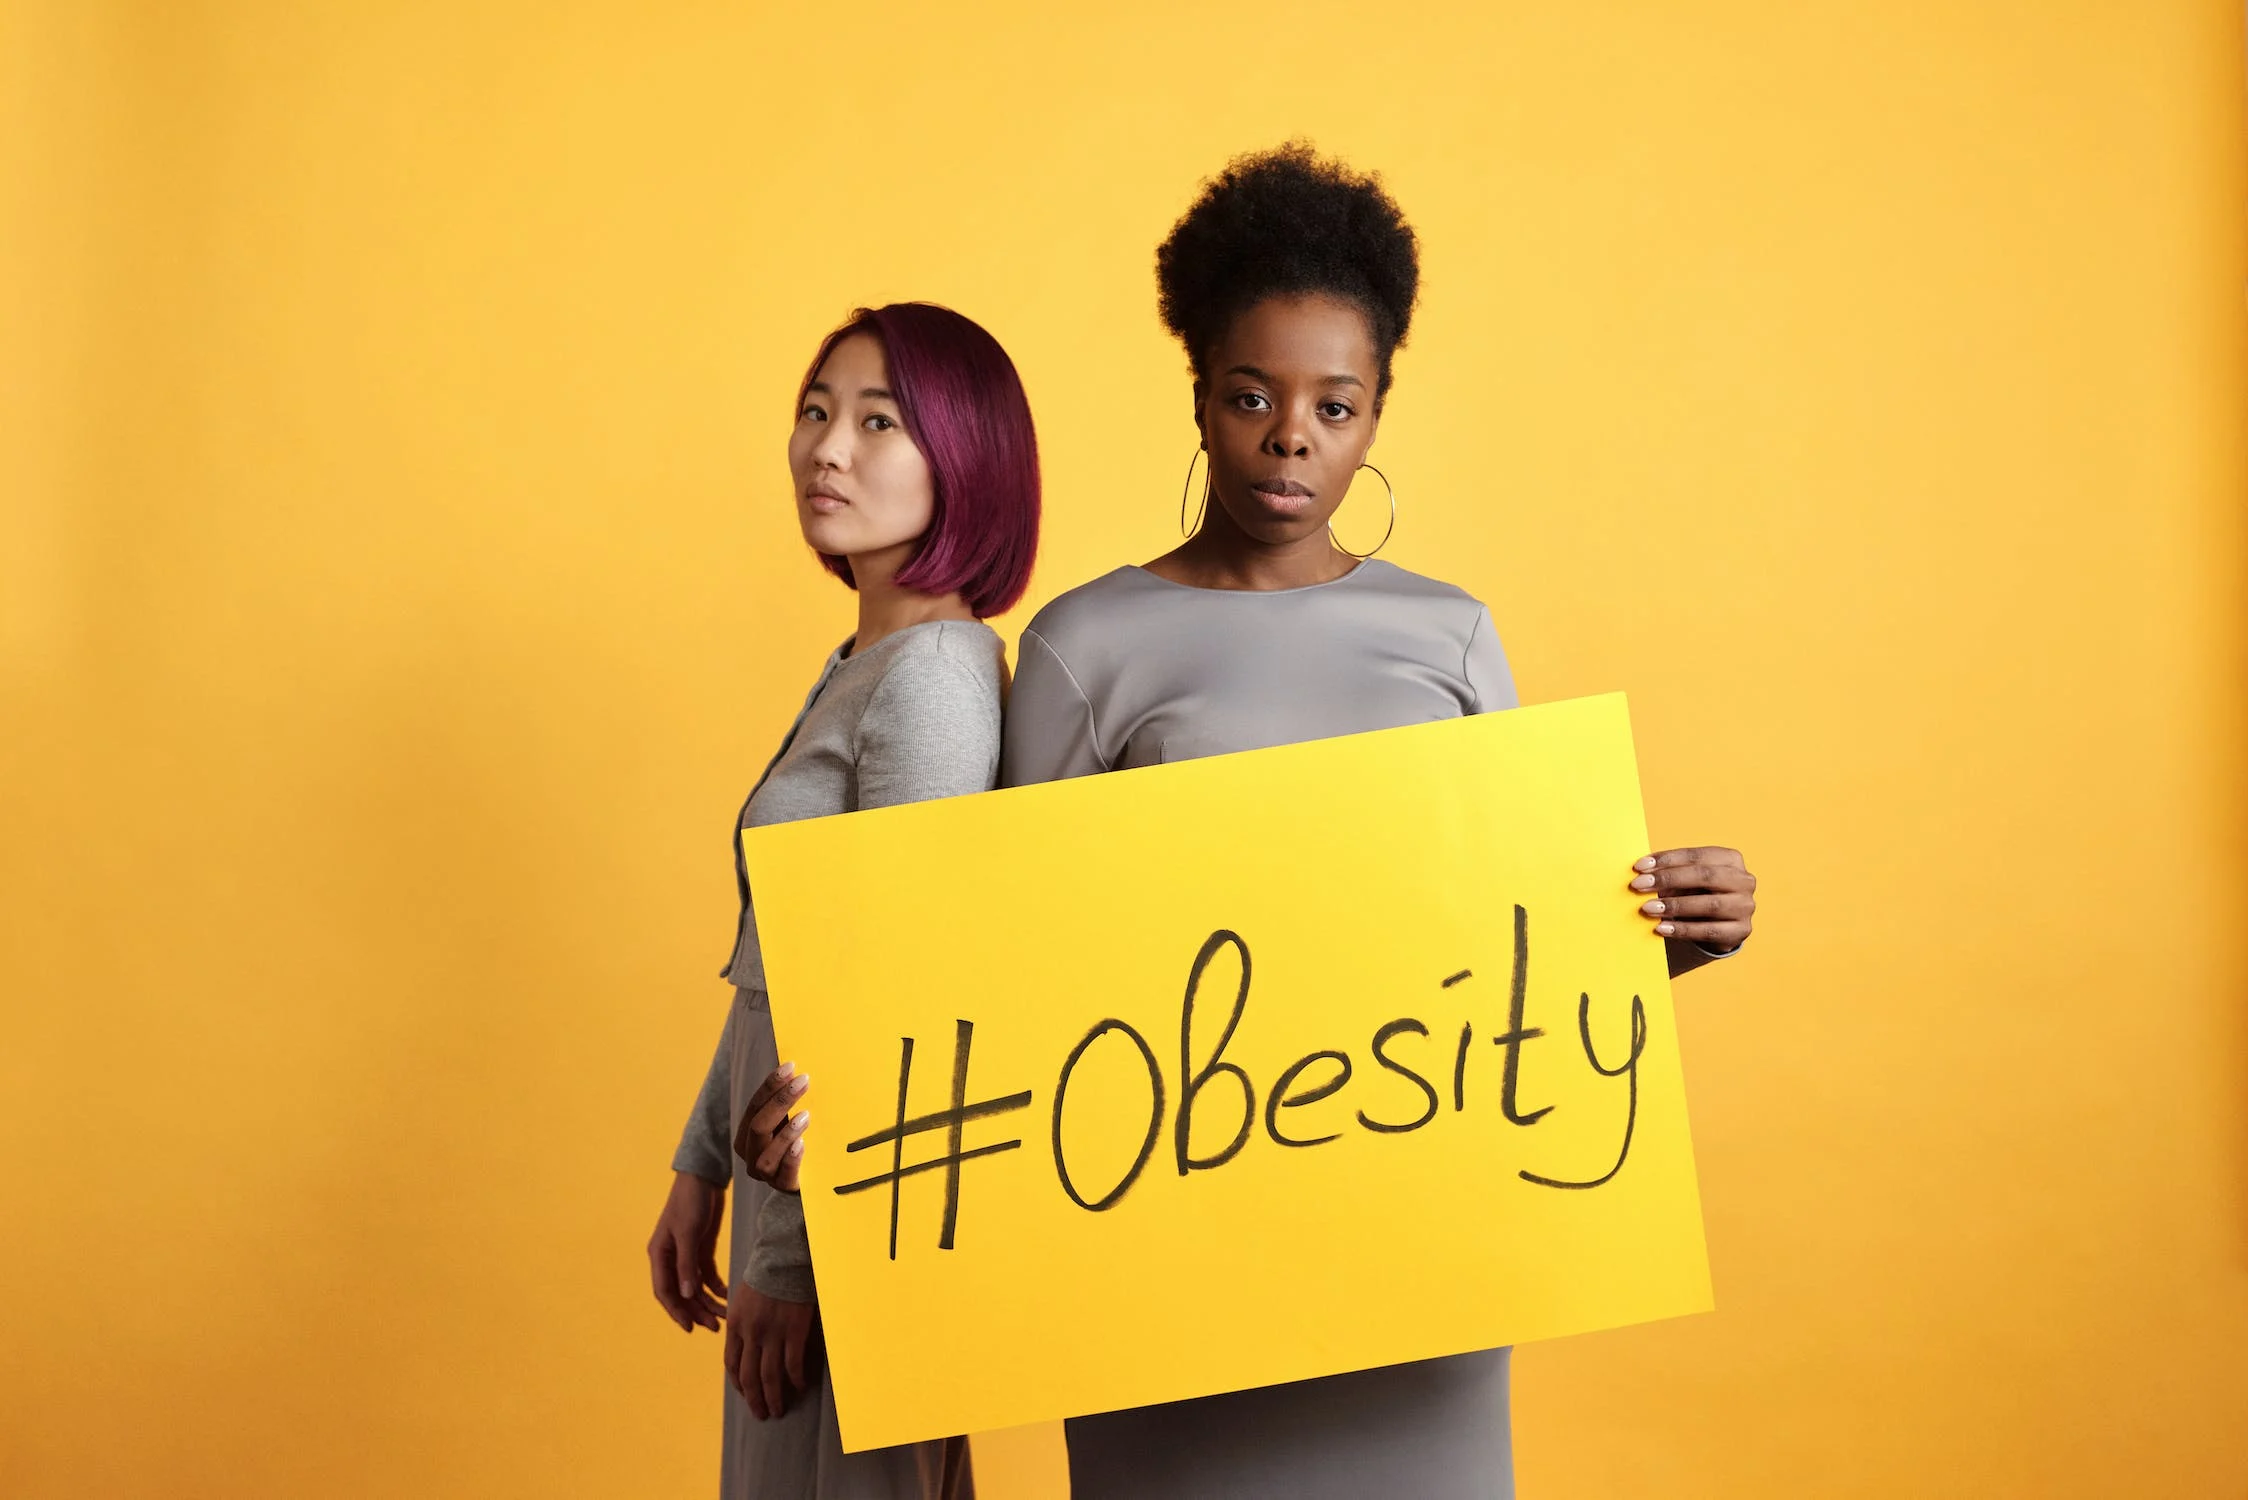 Tackling Obesity